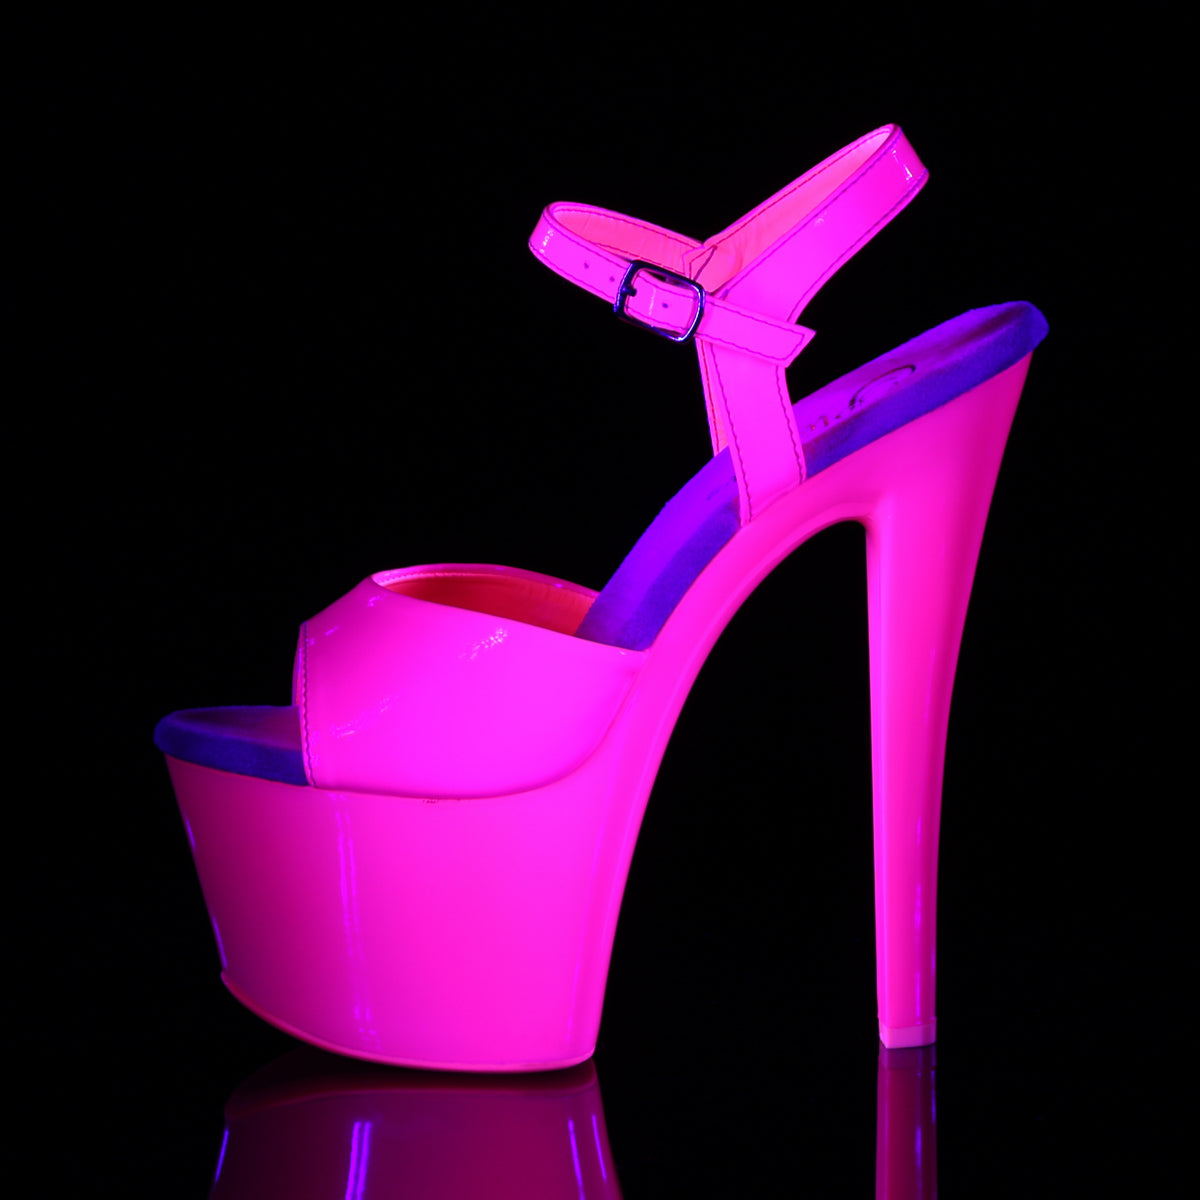 SKY-309UV 7" Heel Neon Hot Pink Pole Dancing Platforms-Pleaser- Sexy Shoes Pole Dance Heels